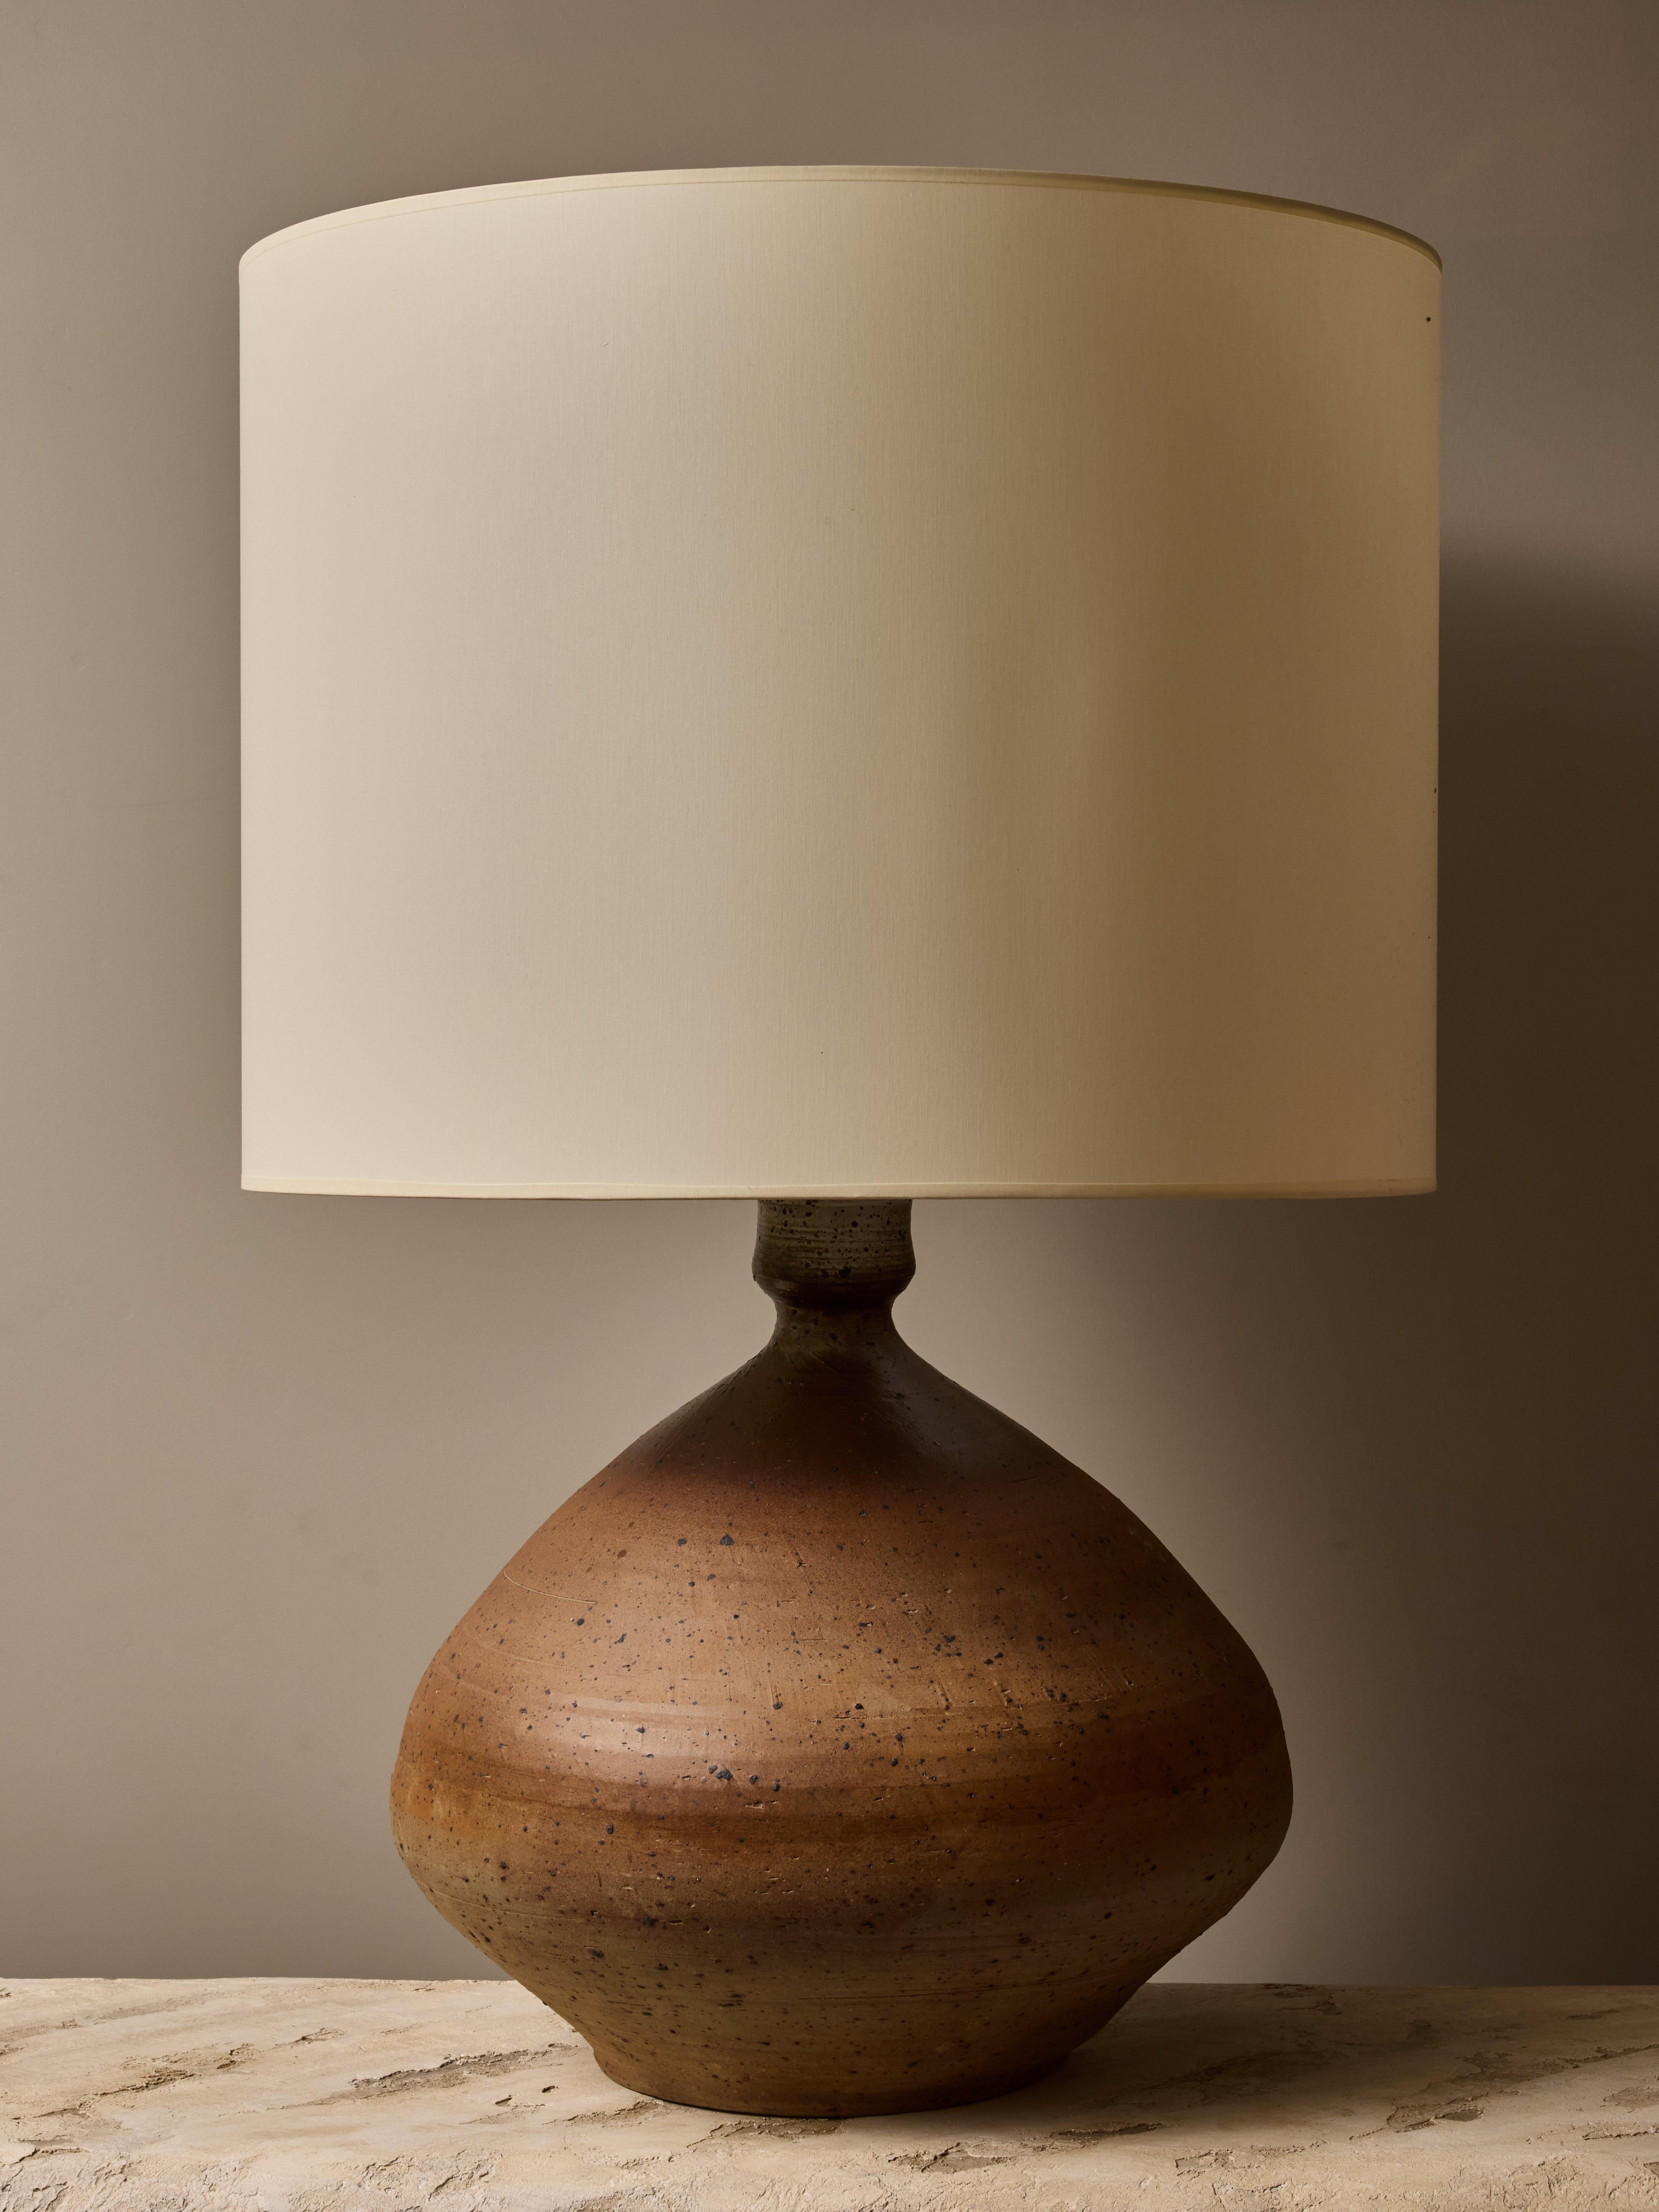 Très bel exemple des premiers travaux de François Lanusé, cette grande lampe de table en céramique aux tons très terreux s'estompe du bas vers le haut, avec des mouchetures sombres tout autour. Surmontée d'un grand abat-jour neuf, cette lampe peut